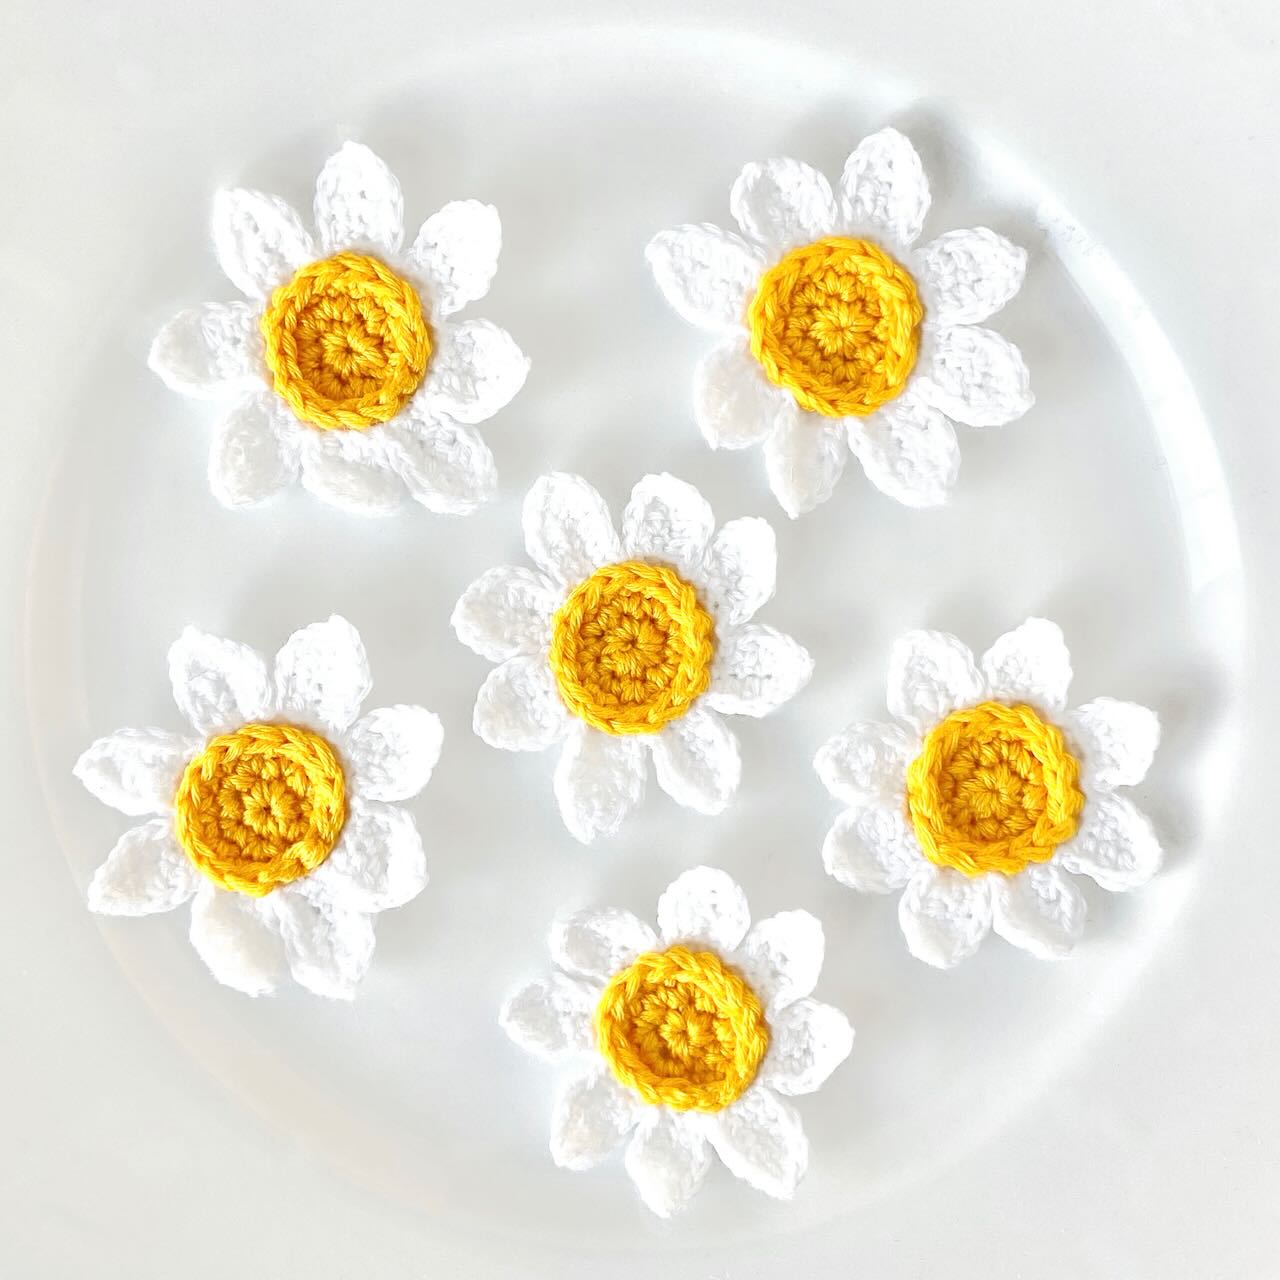 Crochet your own: Daisy flower Crochet Kit